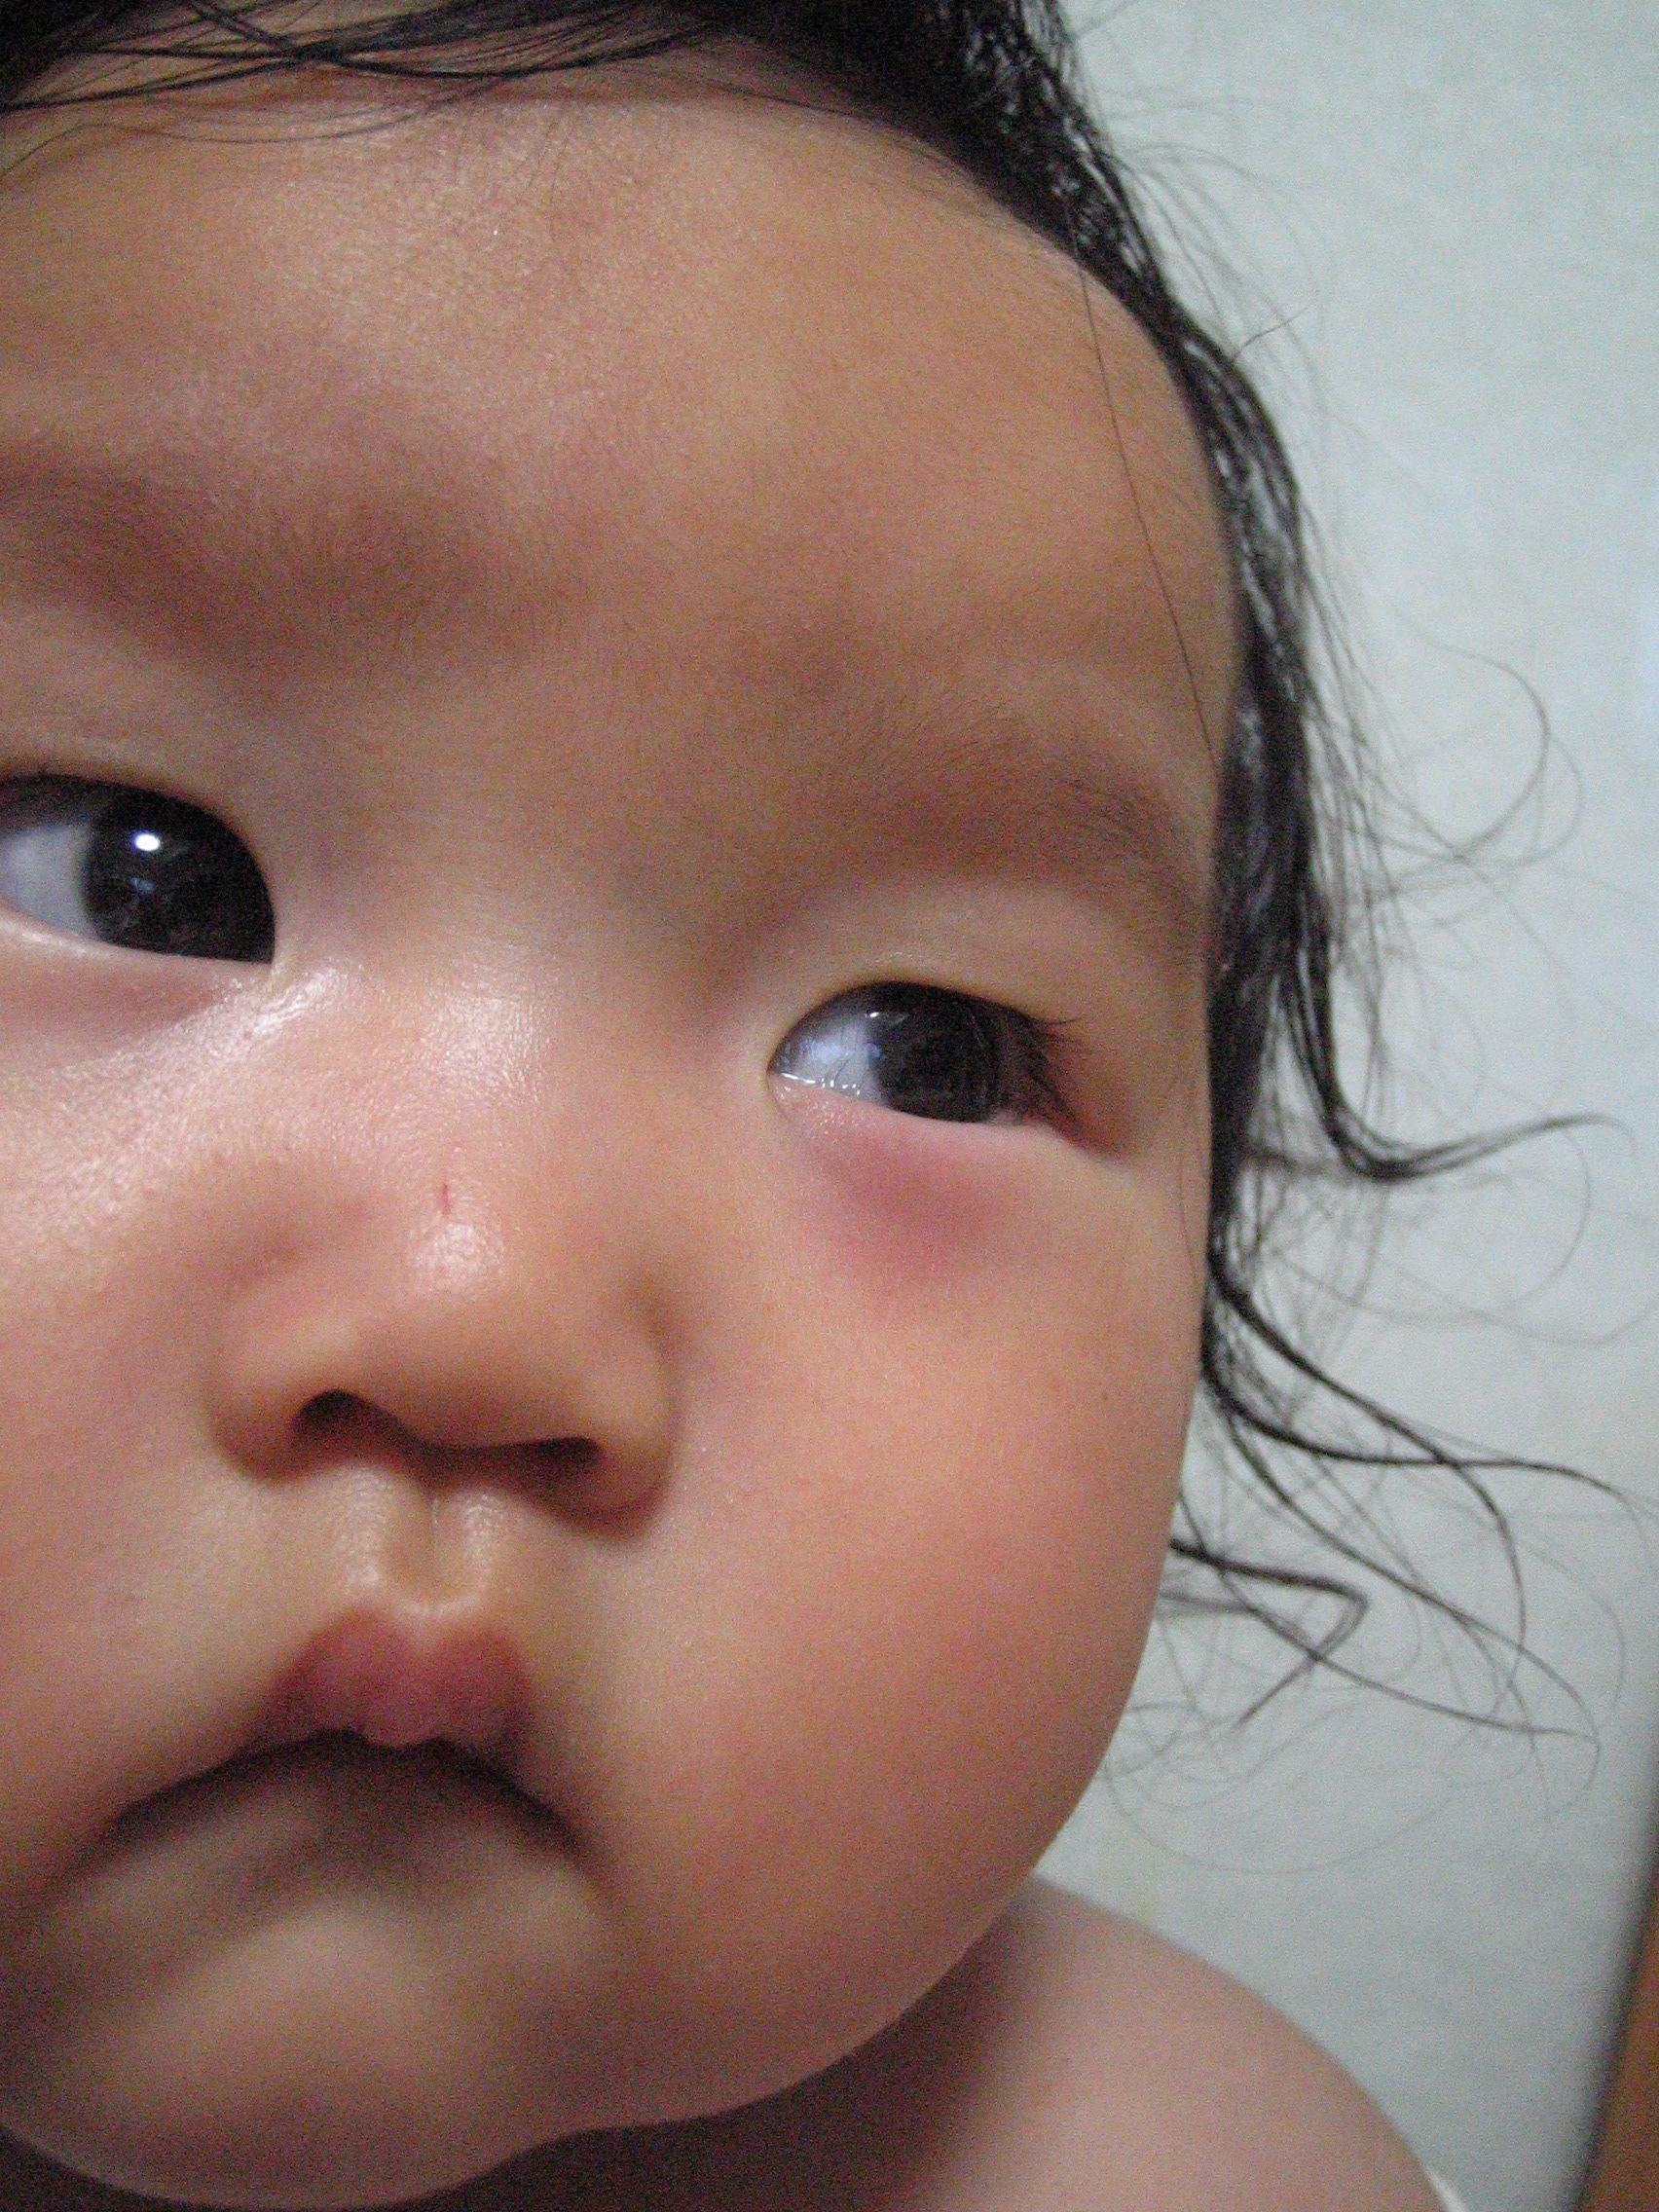 赤ちゃん 目 の 周り 赤い アレルギー